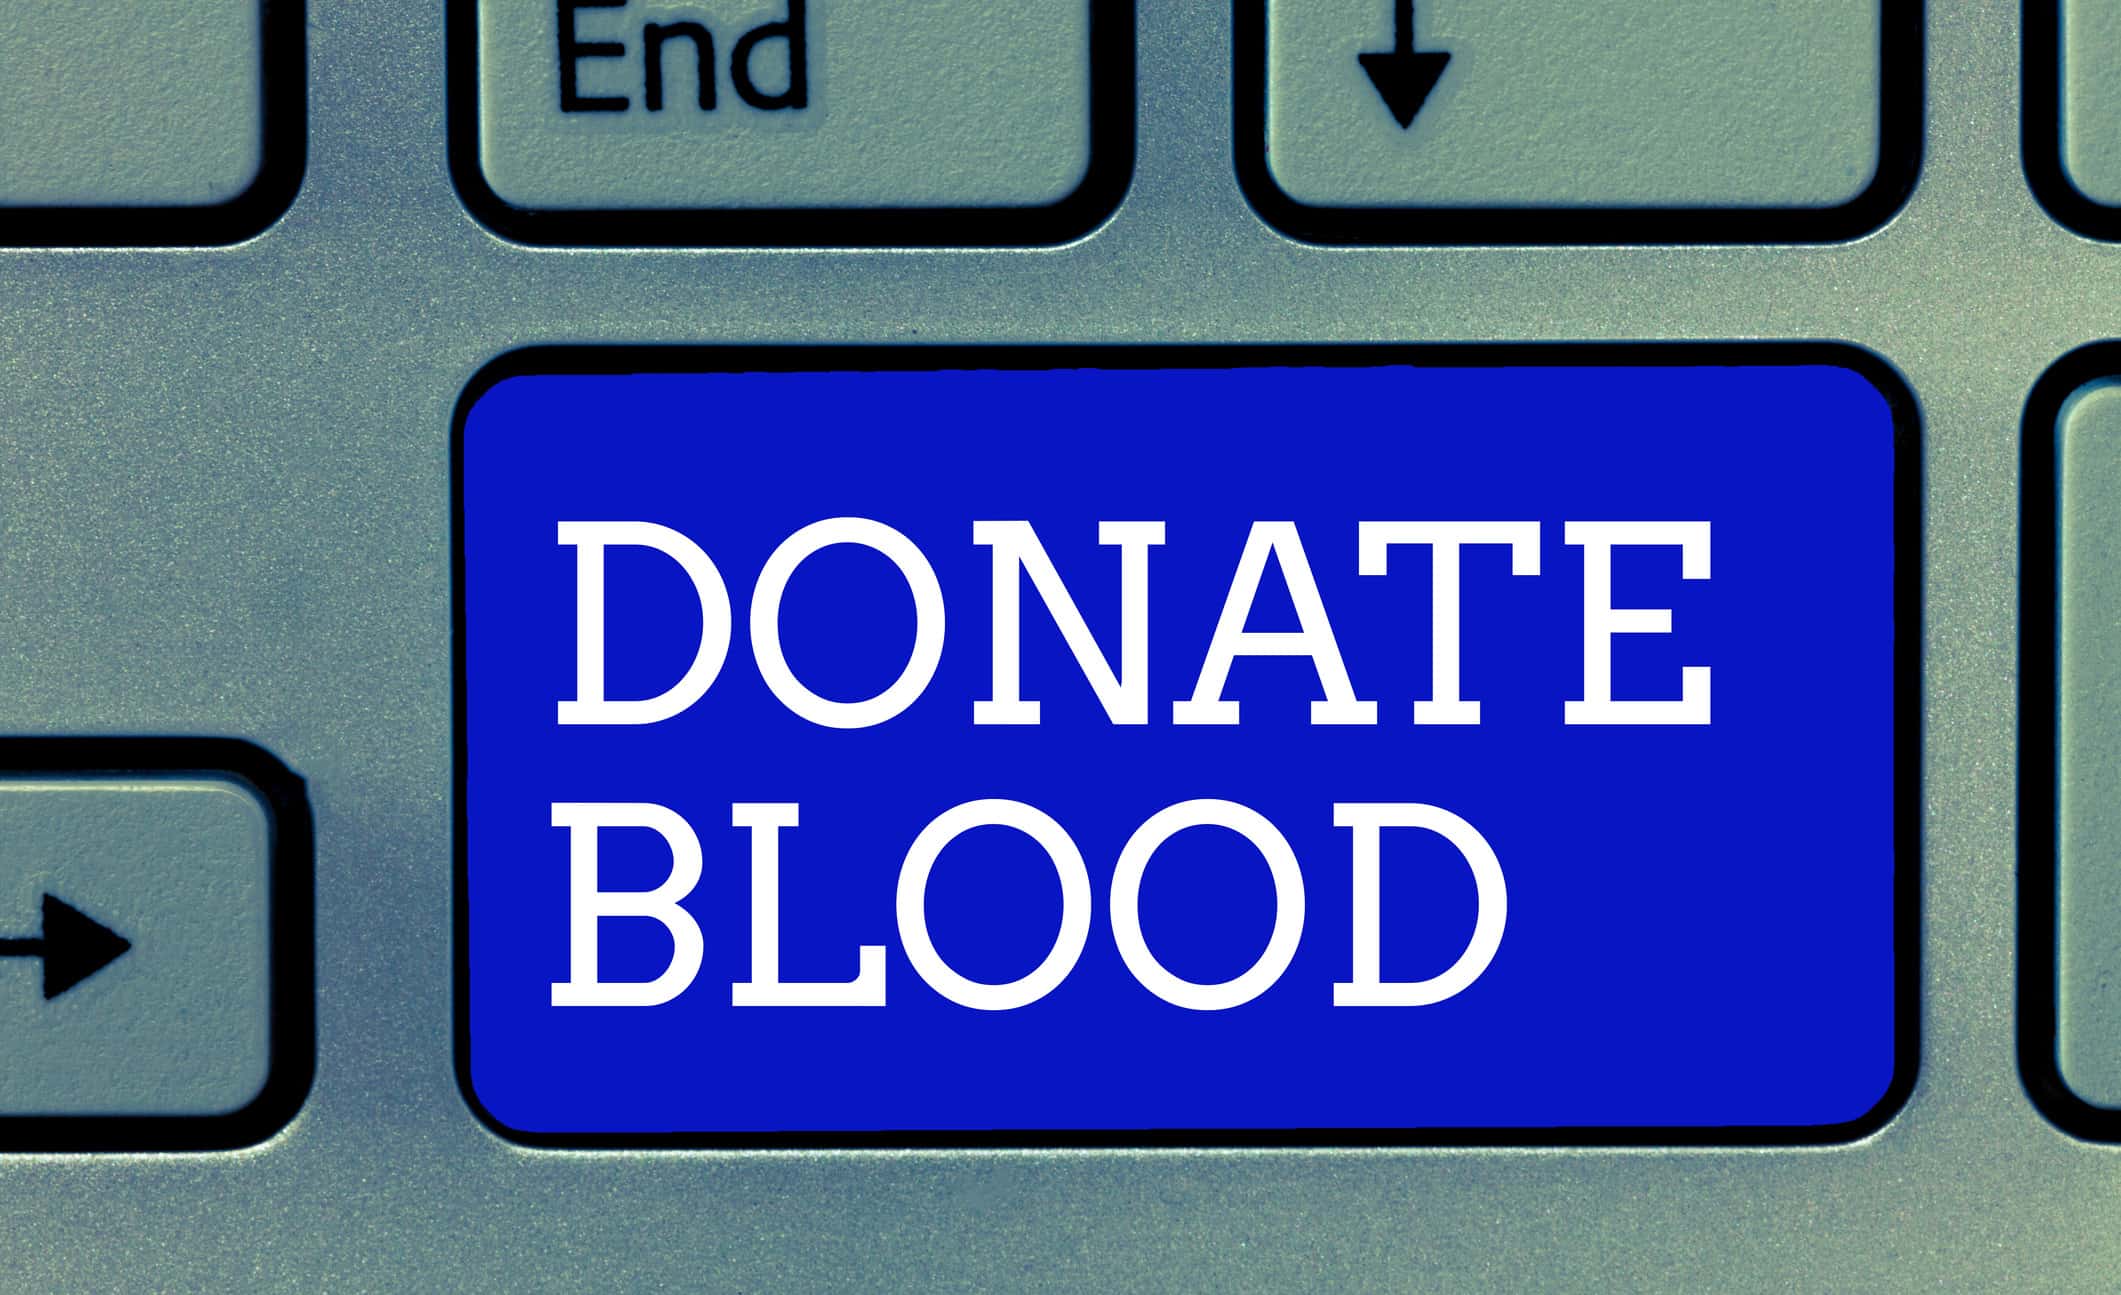 blooddonation